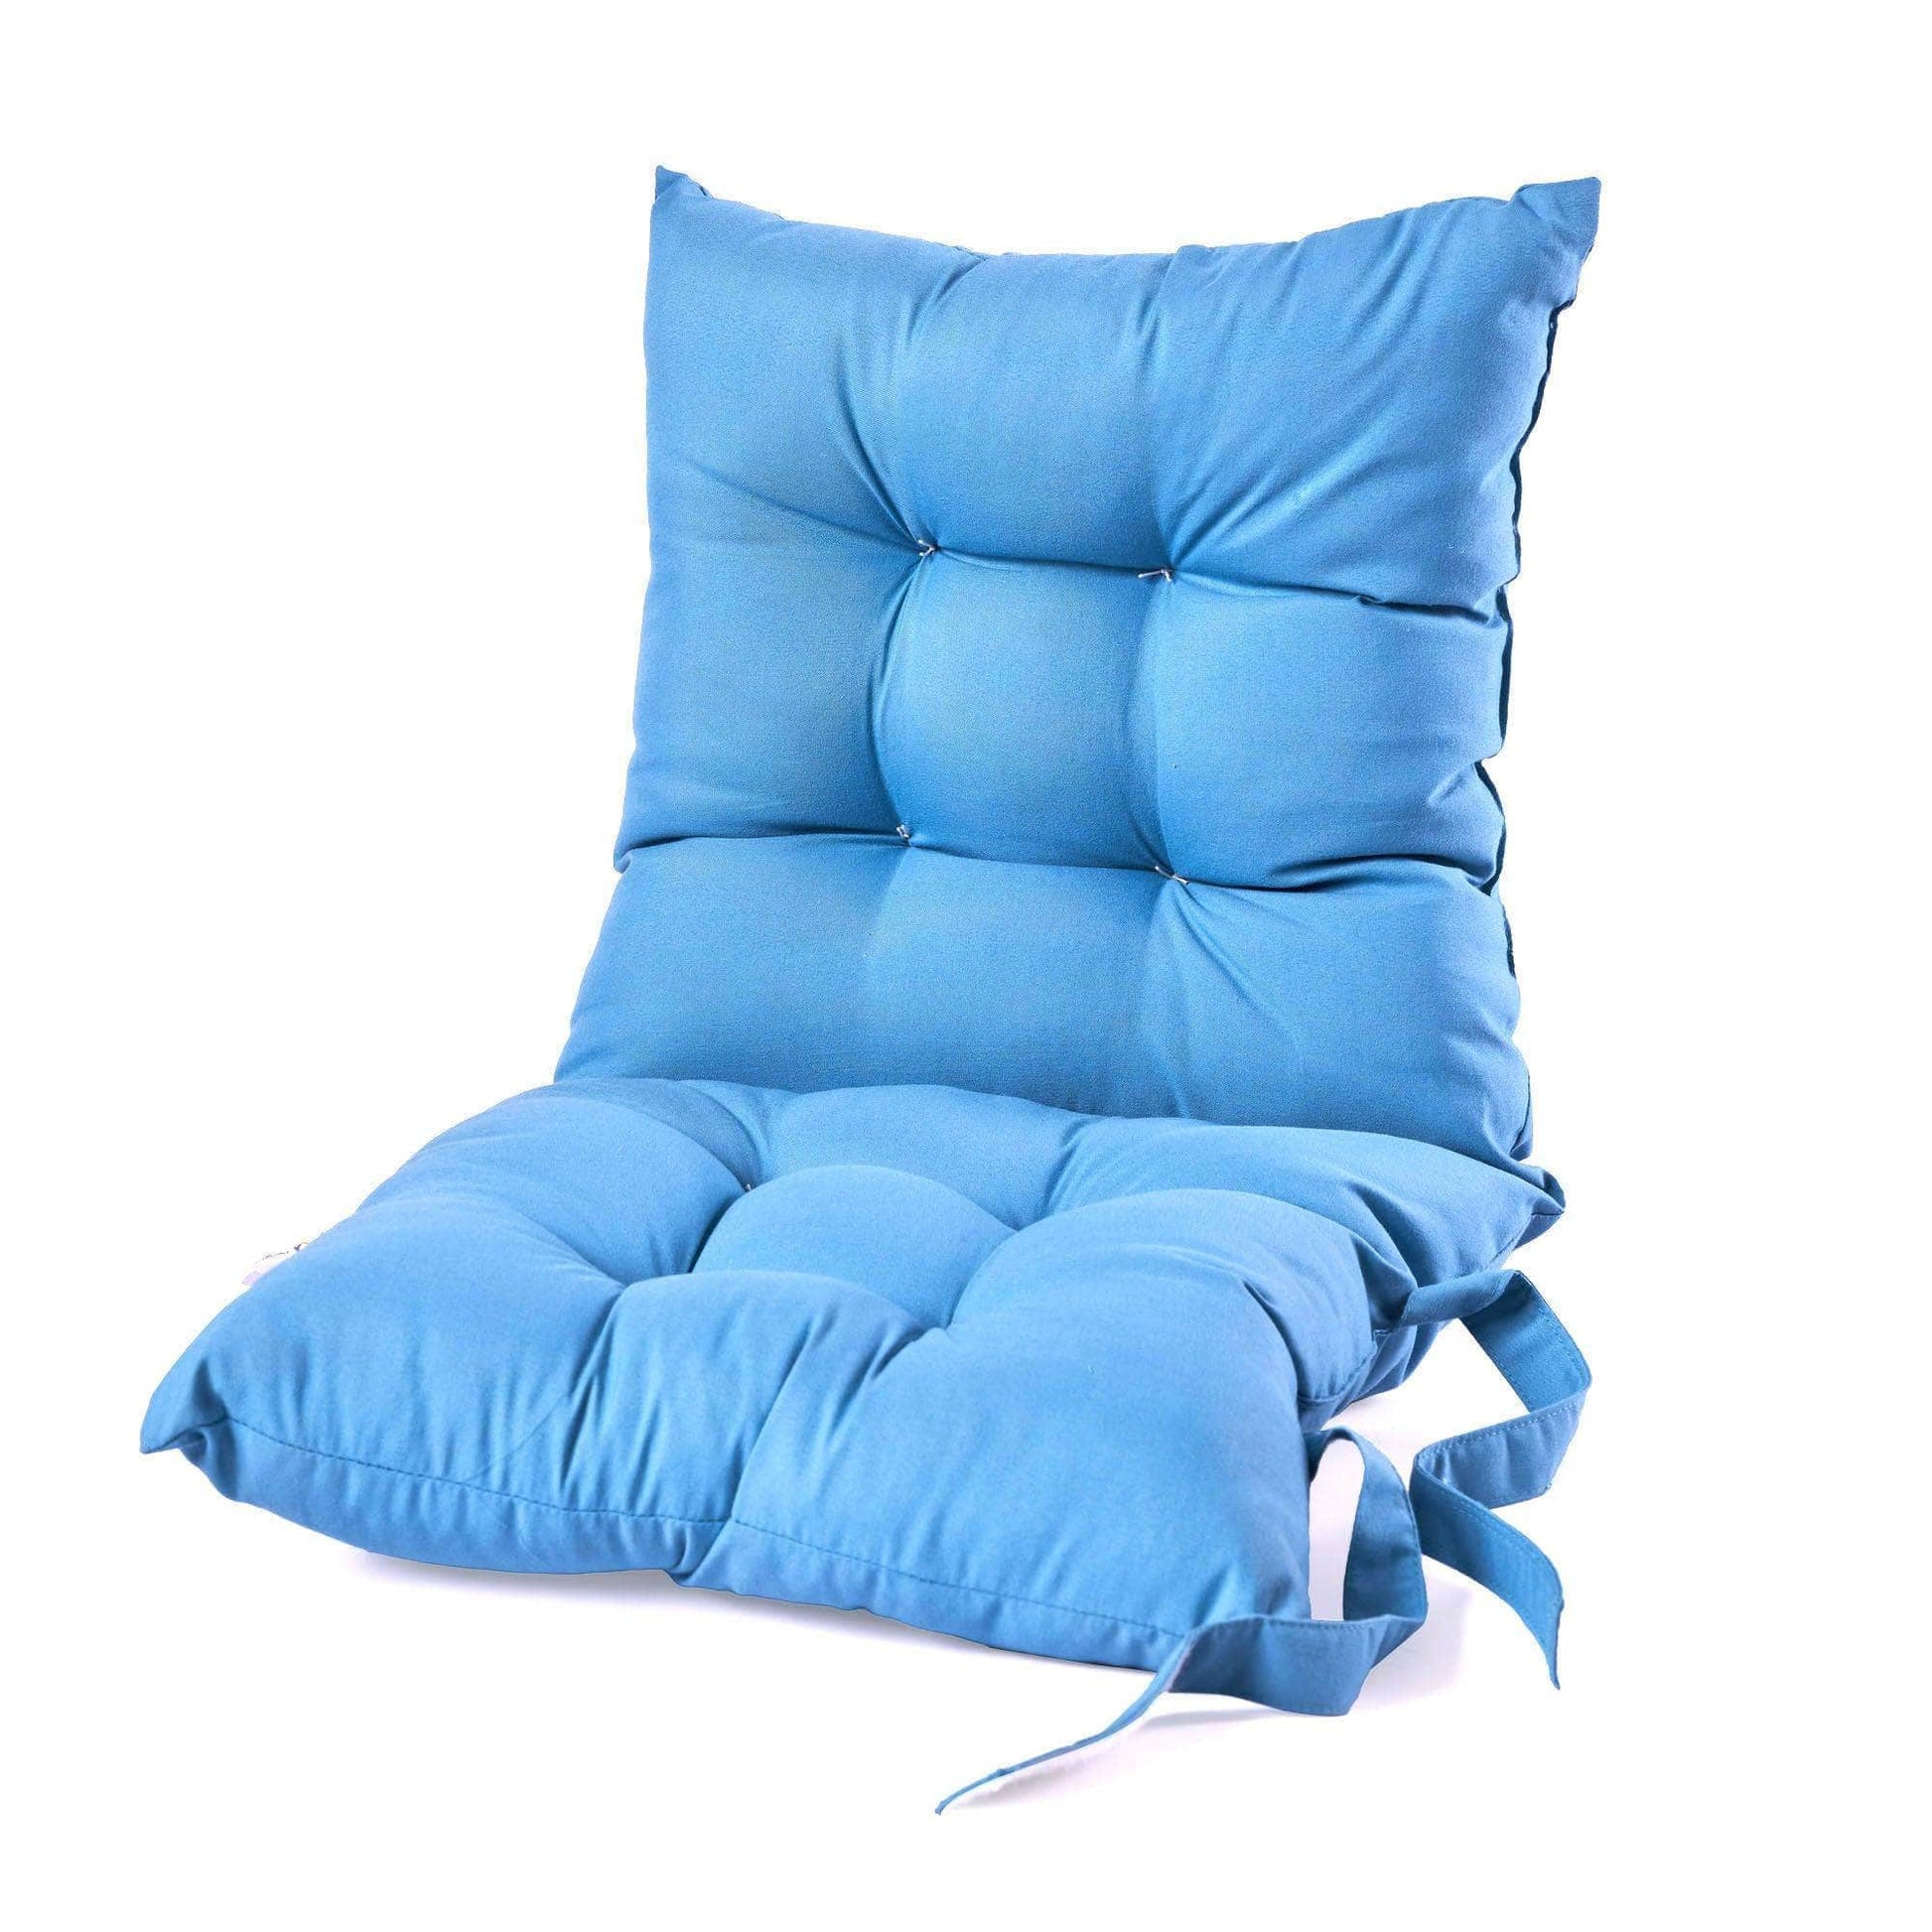 Penguin Group Cushions Skyblue Fiber Double Folded Chair Cushion 65×30 cm